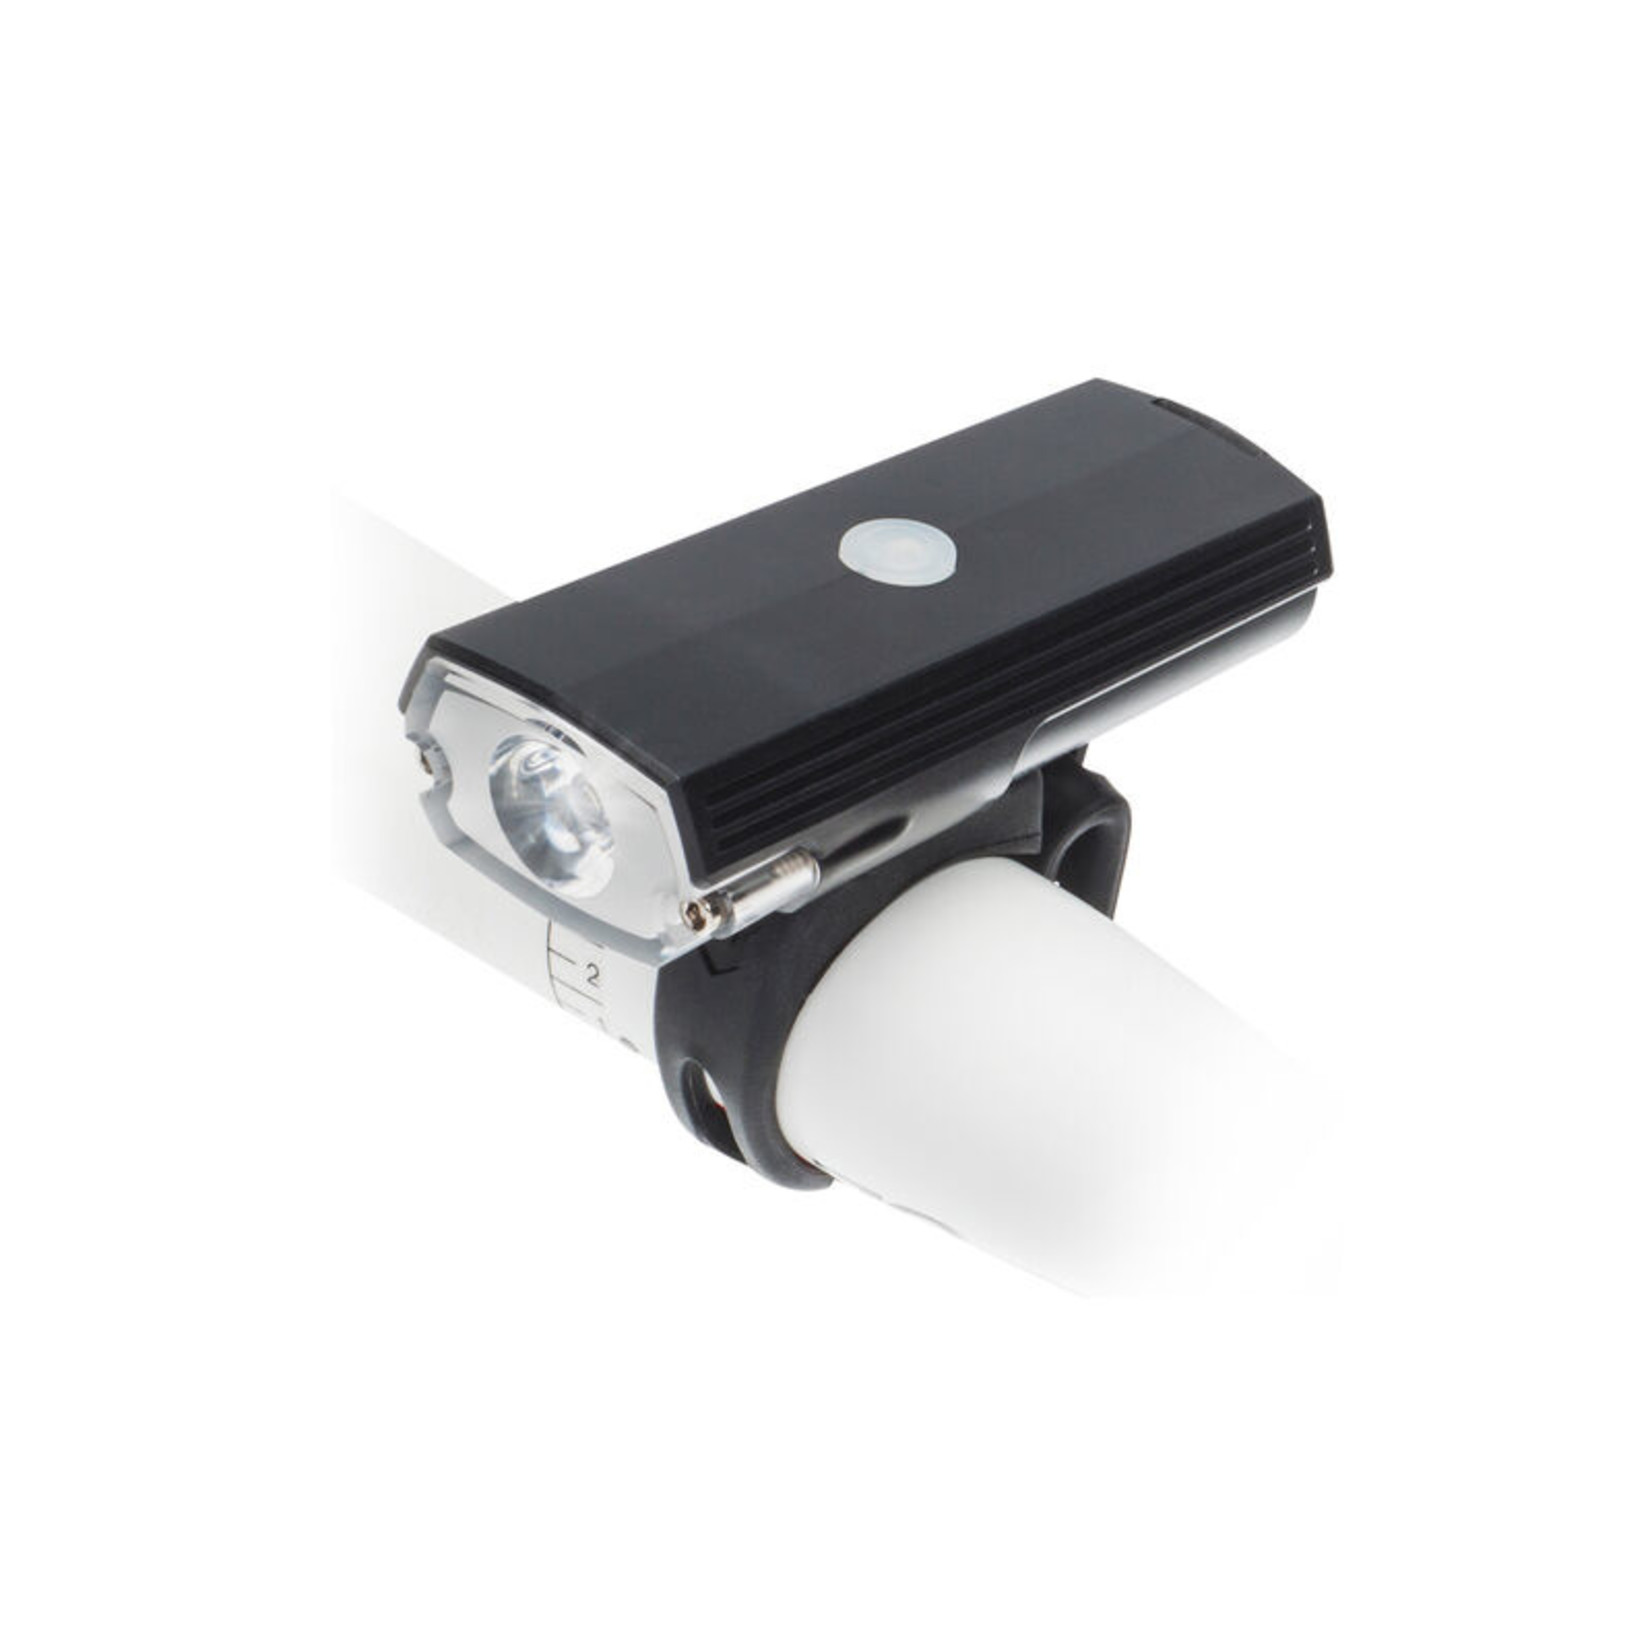 Blackburn BLACKBURN DAYBLAZER USB 550 LUMEN FRONT LIGHT